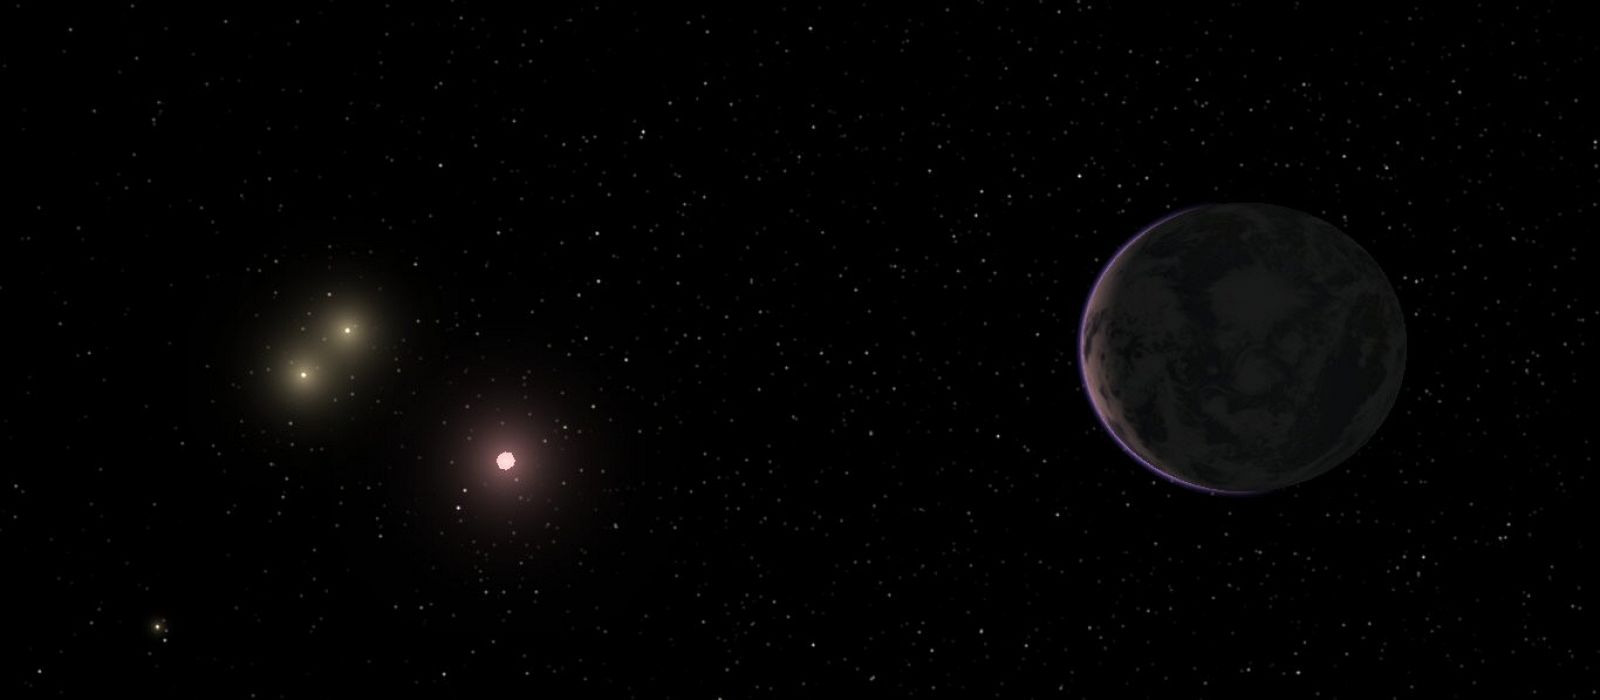 Un equipo internacional de científicos descubrió esta 'supertierra' que orbita a unos 22 años luz de nuestro planeta.